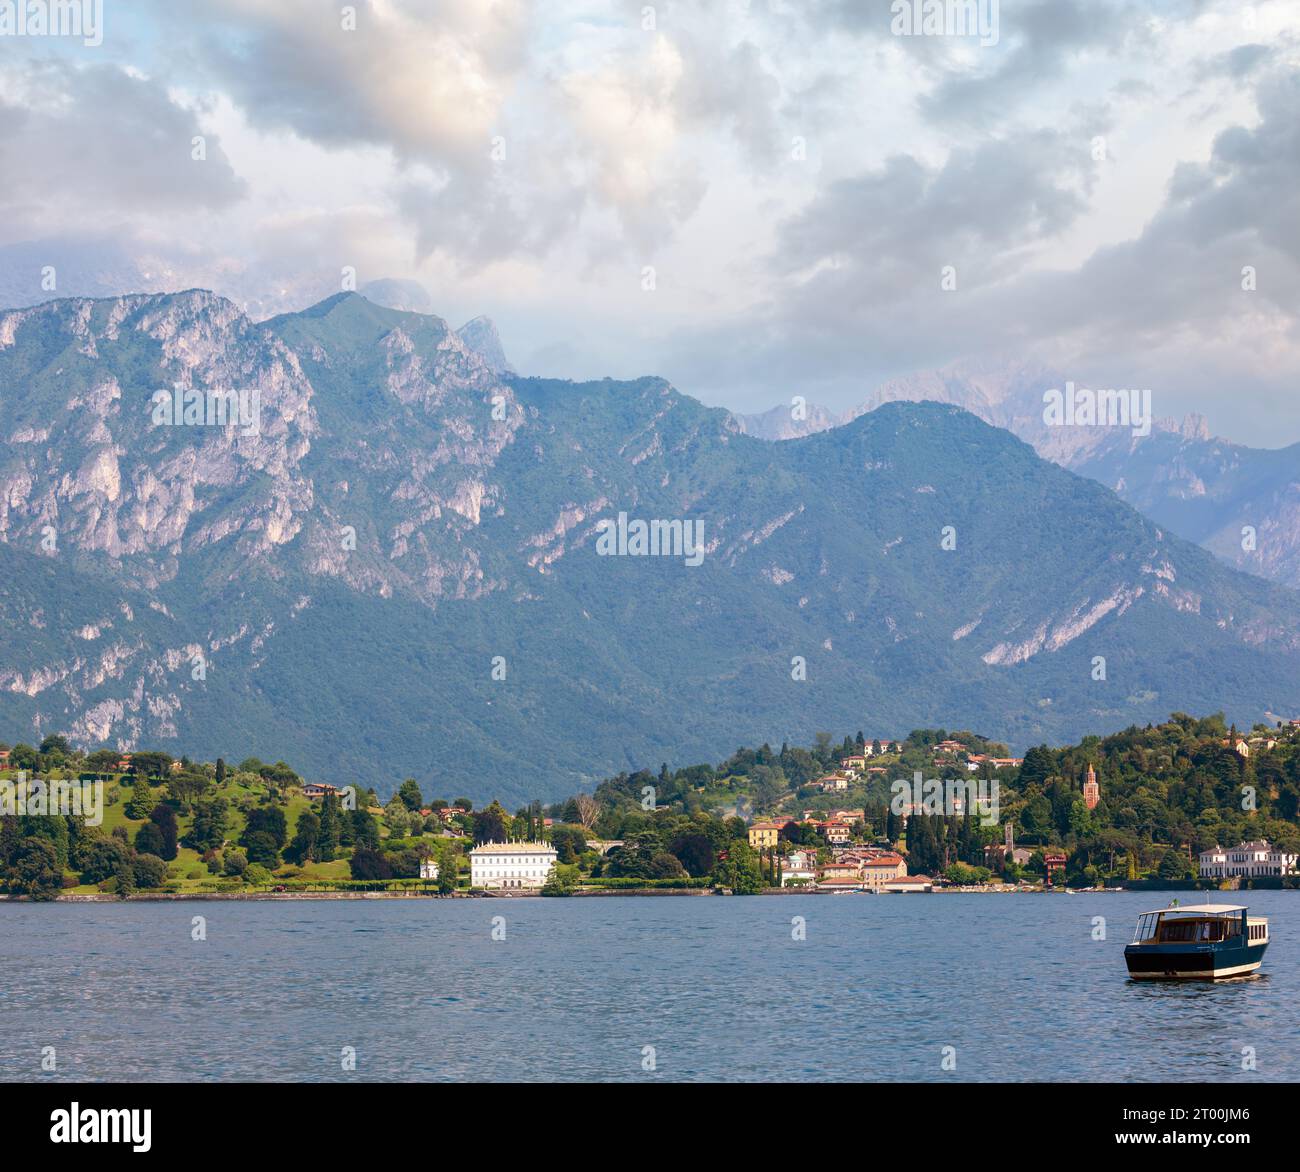 Lake Como shore from ship view Stock Photo